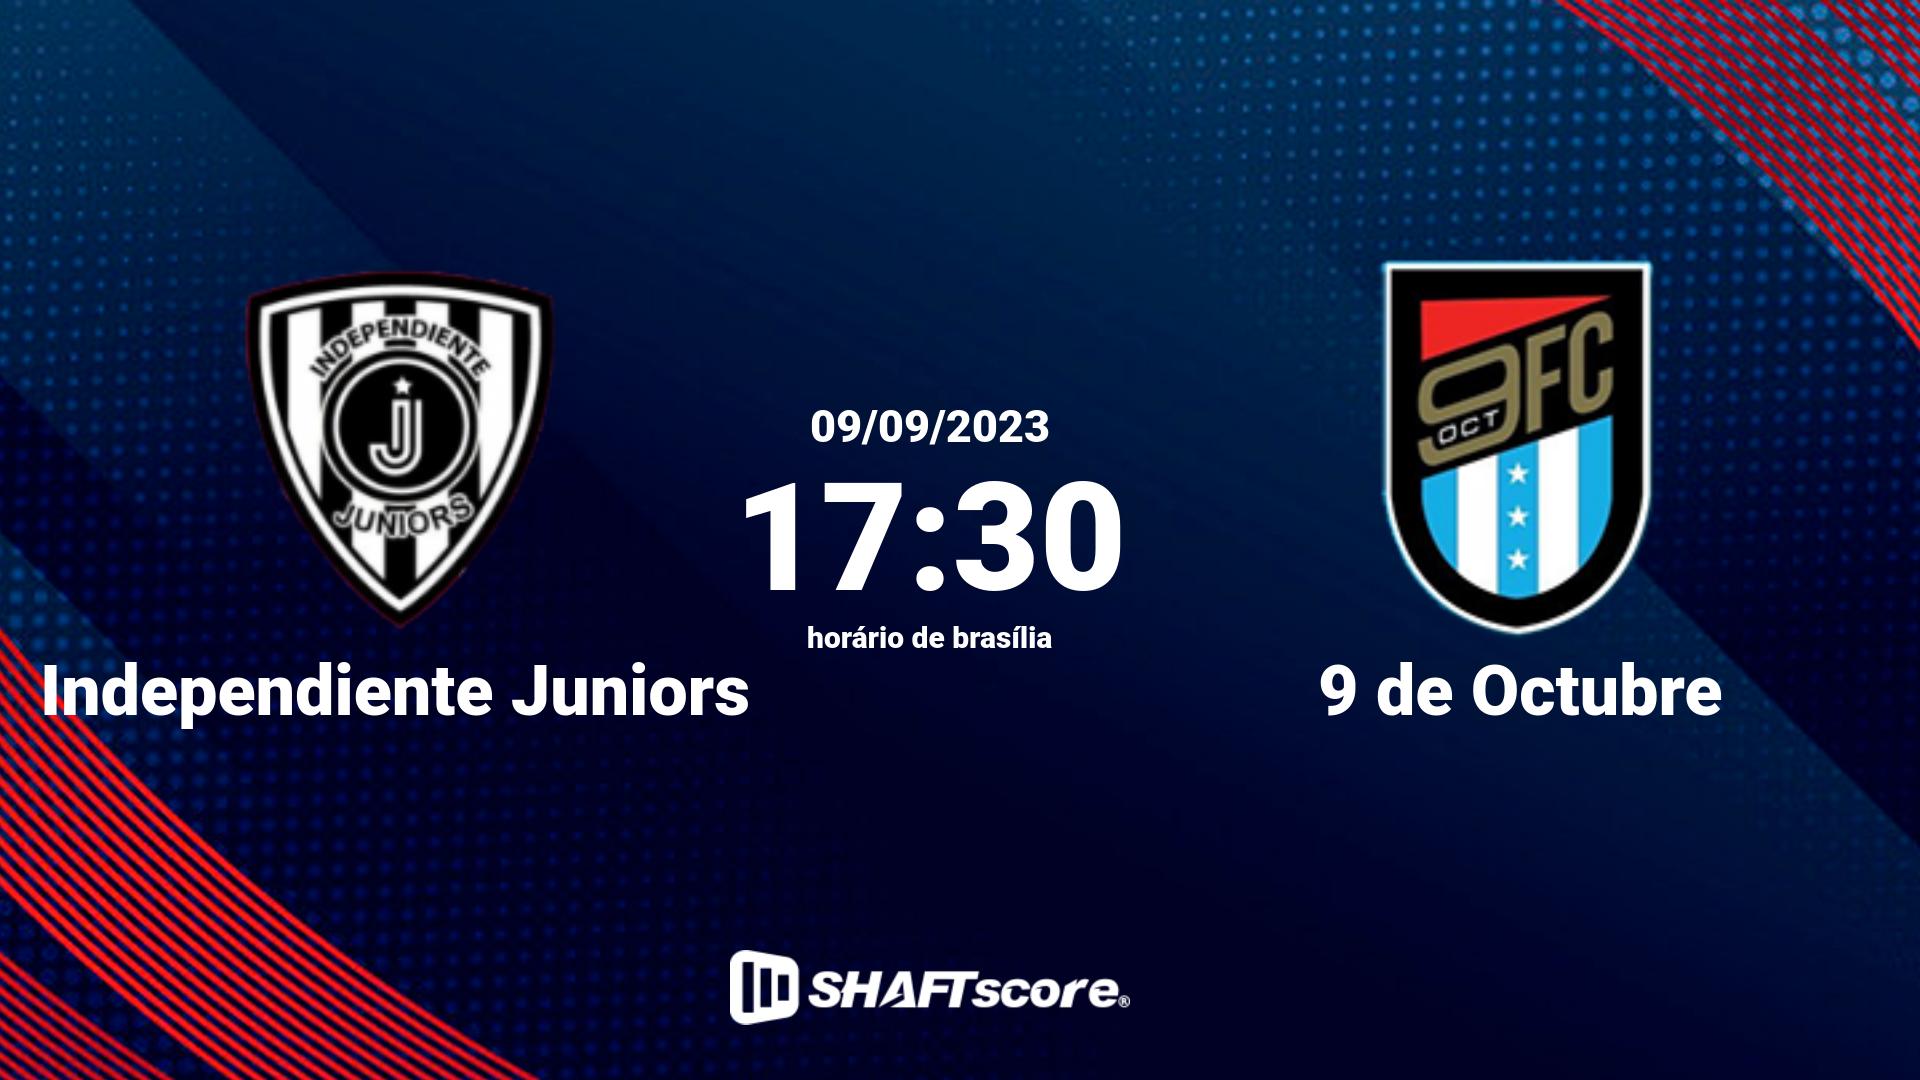 Estatísticas do jogo Independiente Juniors vs 9 de Octubre 09.09 17:30